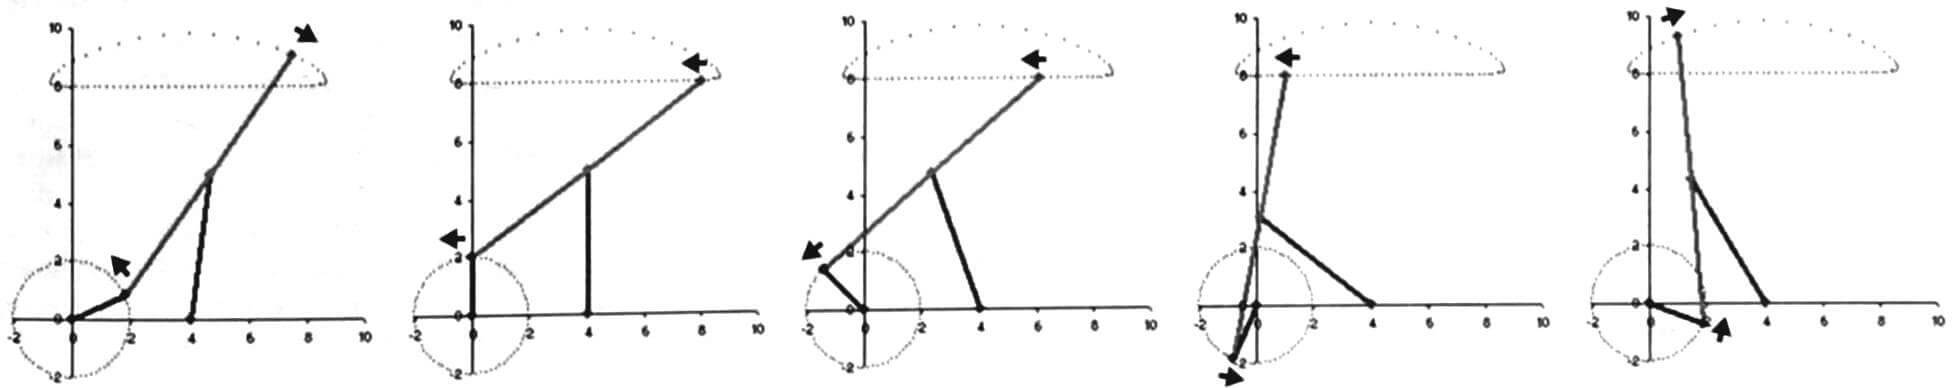 Кинограмма работы лямбда-механизма Чебышева, преобразующего вращательное движение одного звена в прямолинейное перемещение точки другого звена без каких-либо направляющих устройств